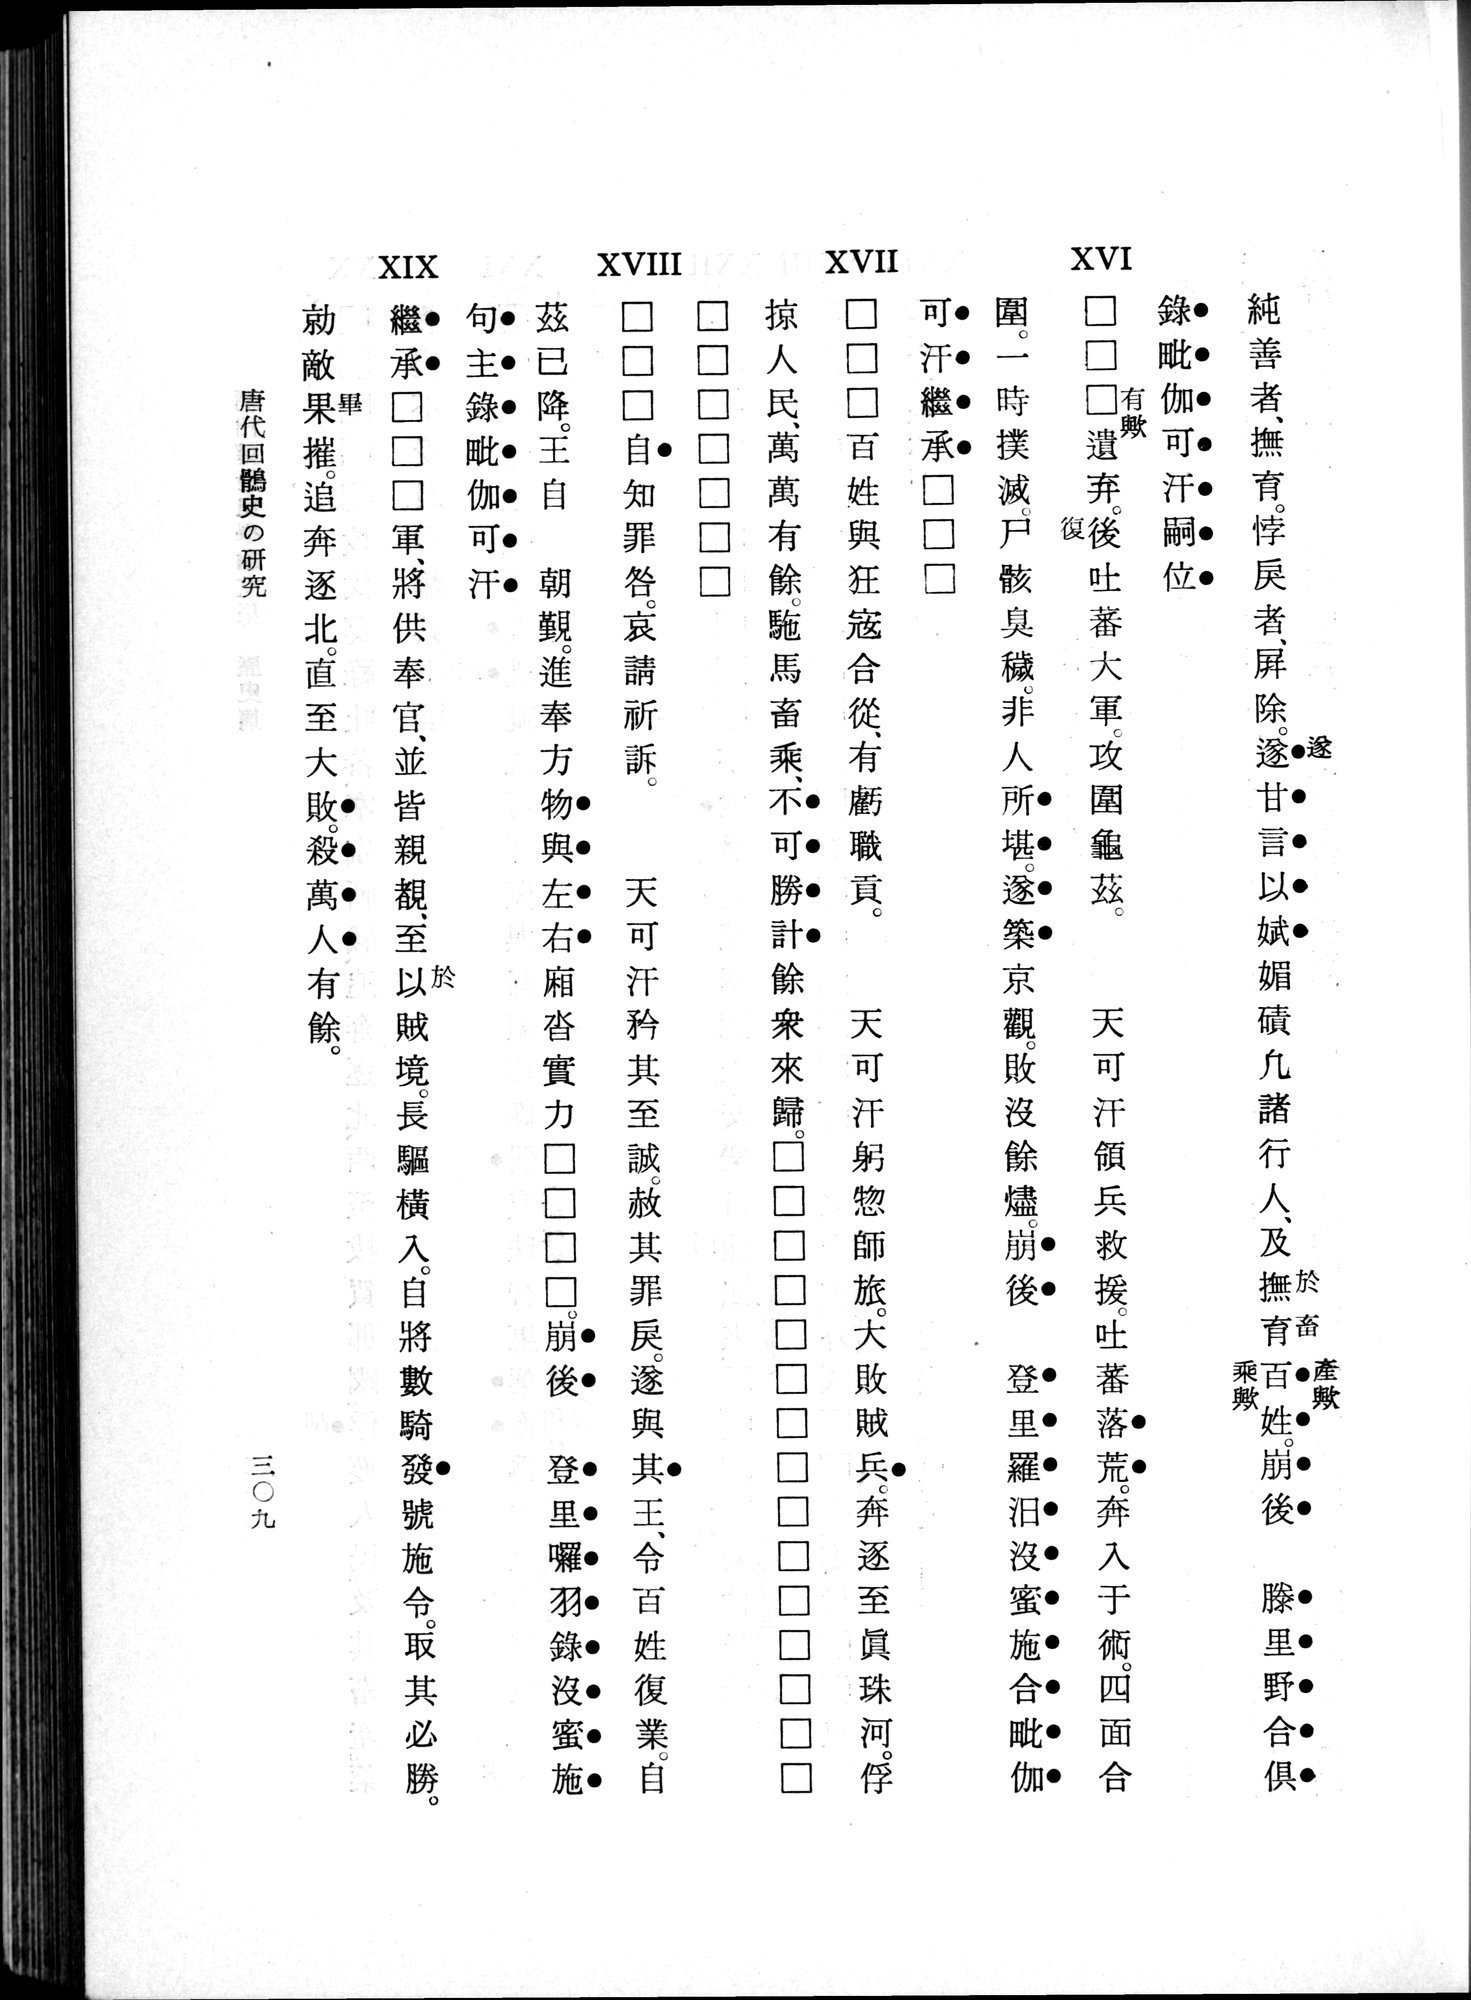 羽田博士史学論文集 : vol.1 / 347 ページ（白黒高解像度画像）